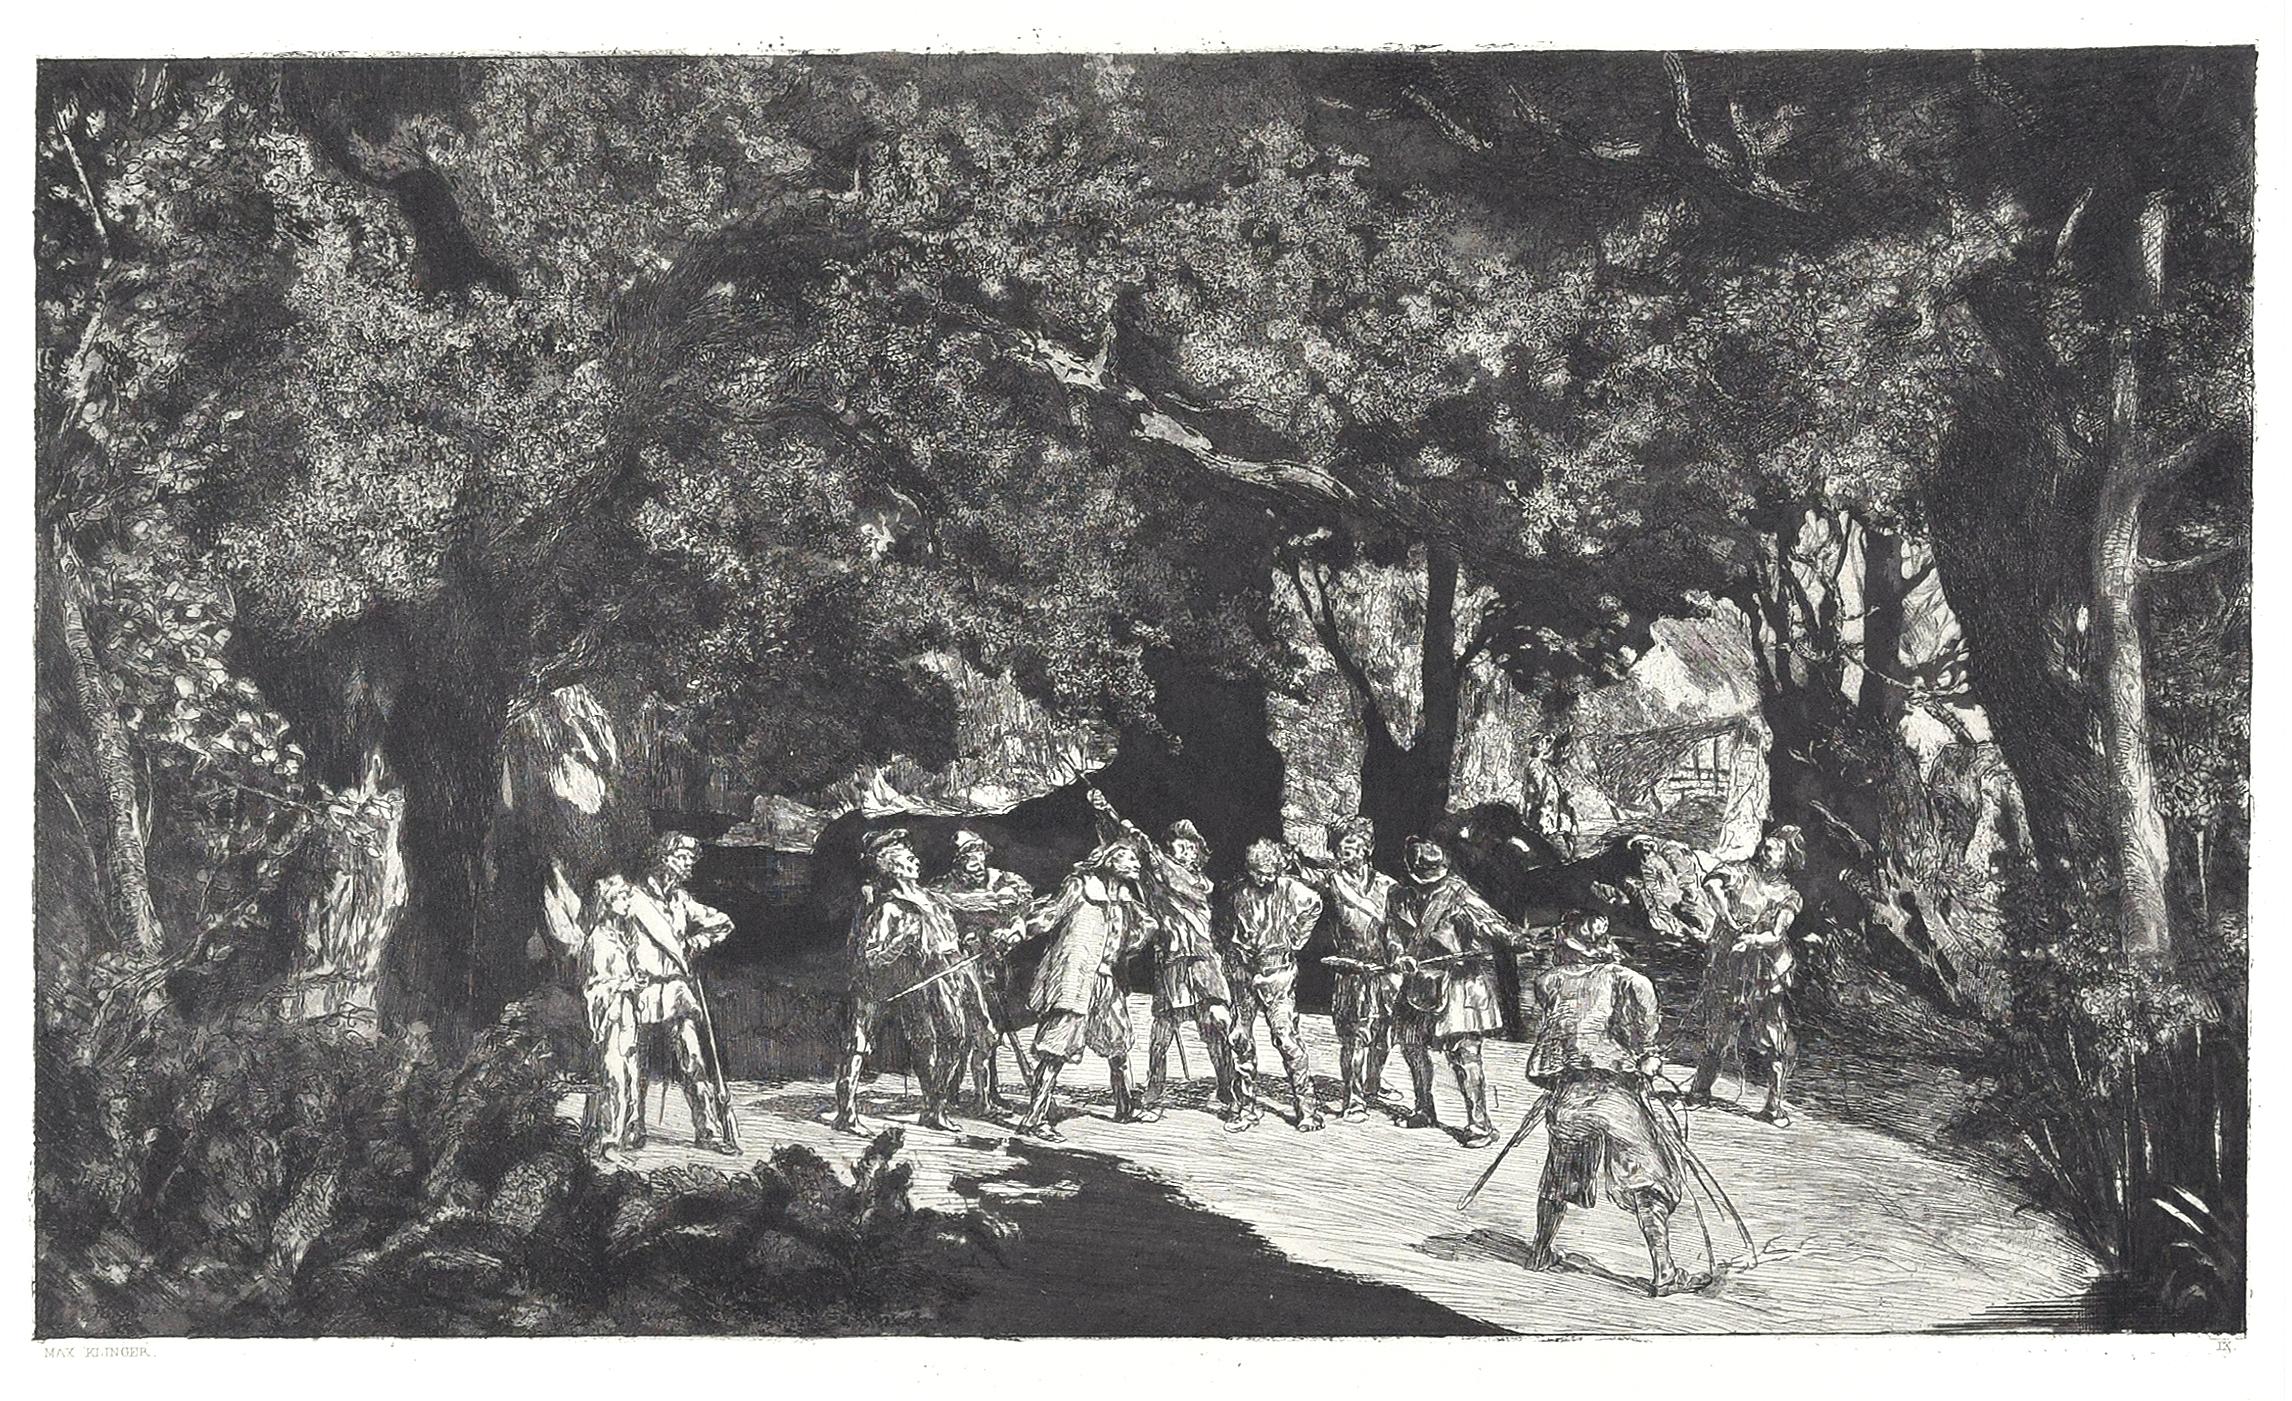  Original-Radierung von M. Klinger, „Stilllicius Among Soldiers“, 1881